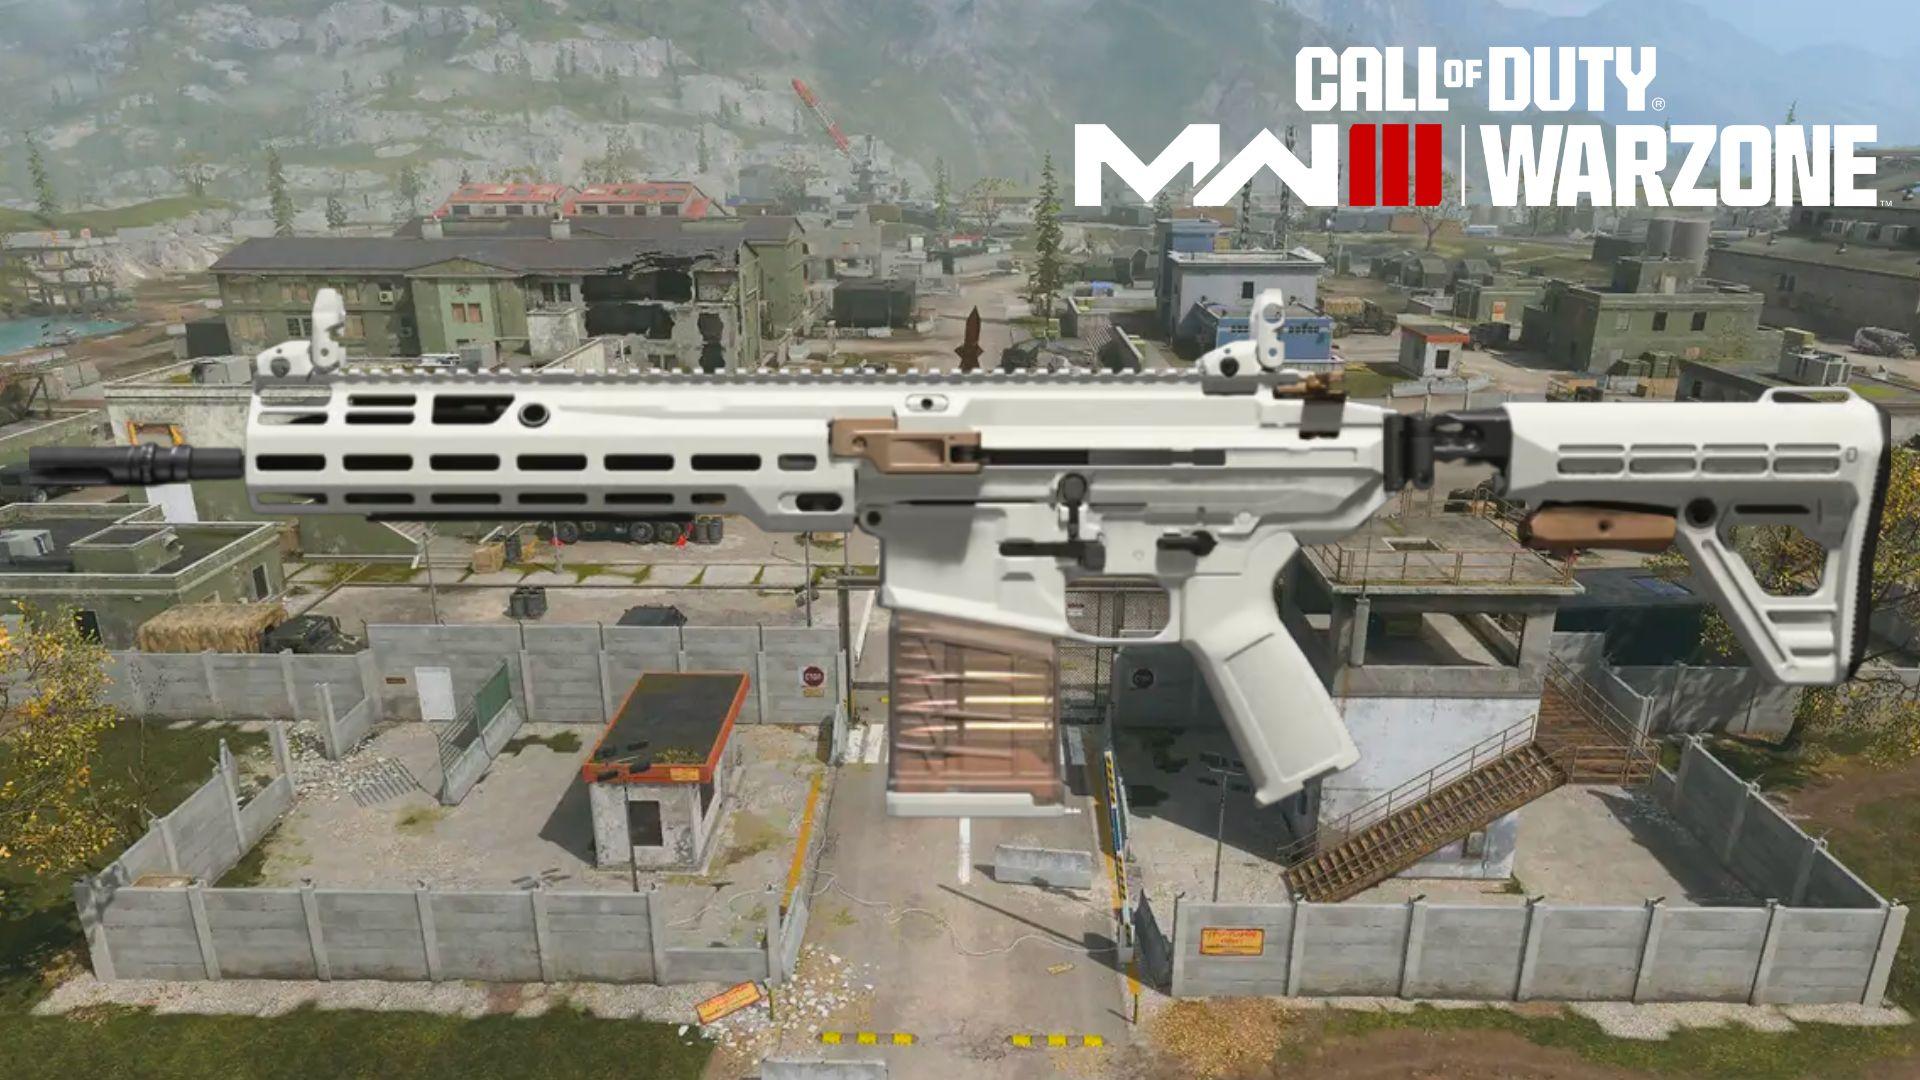 White Basb-B assault rifle in Modern Warfare 3 on Warzone map